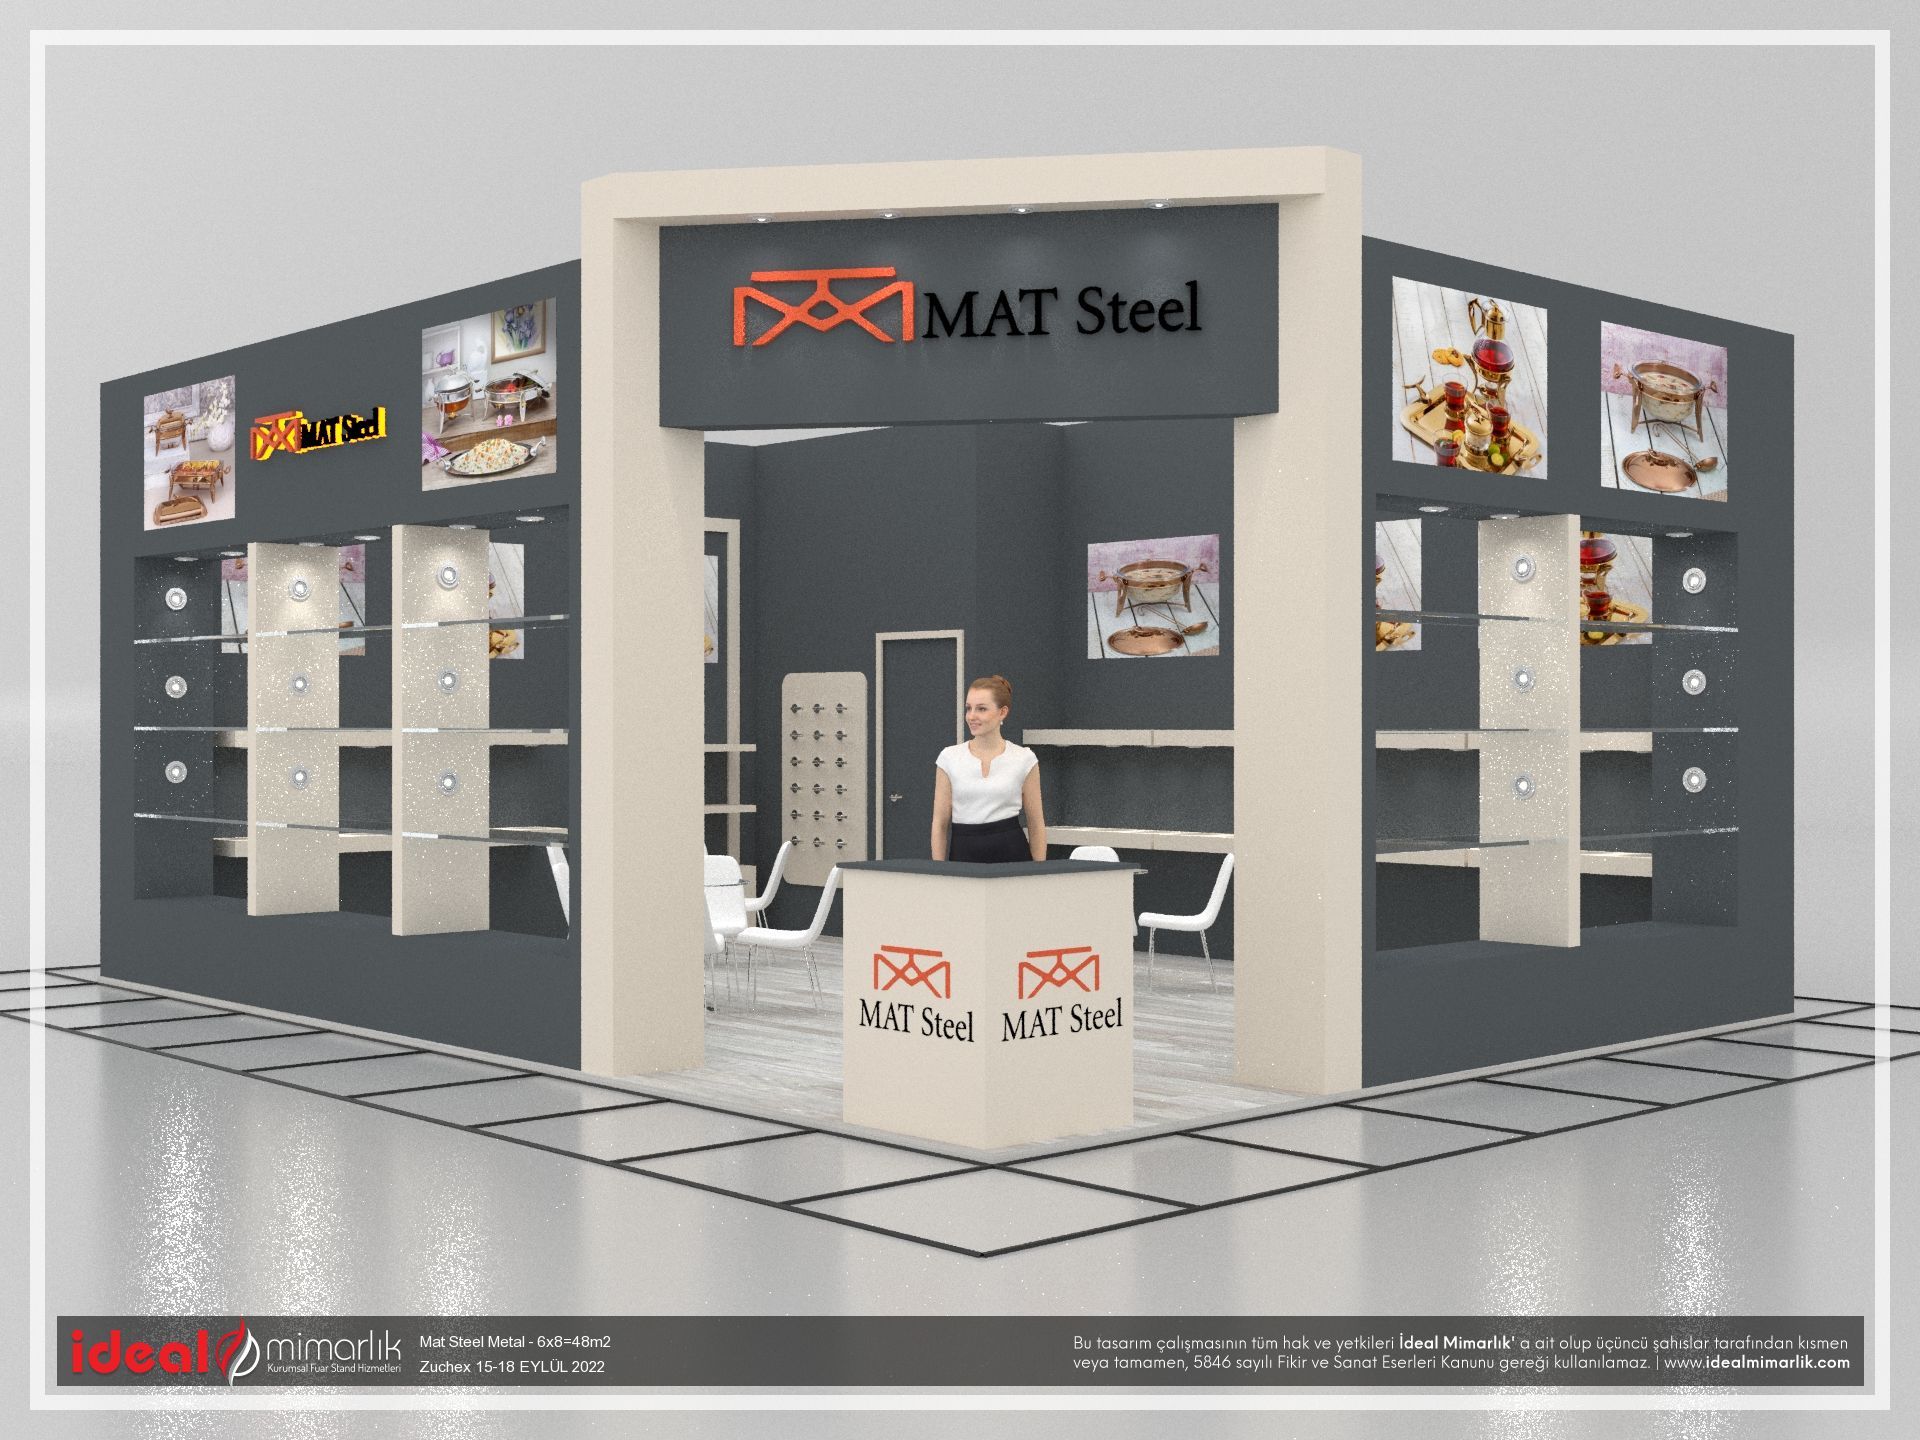 Mat Steel Metal |Zuchex 15-18 EYLÜL 2022